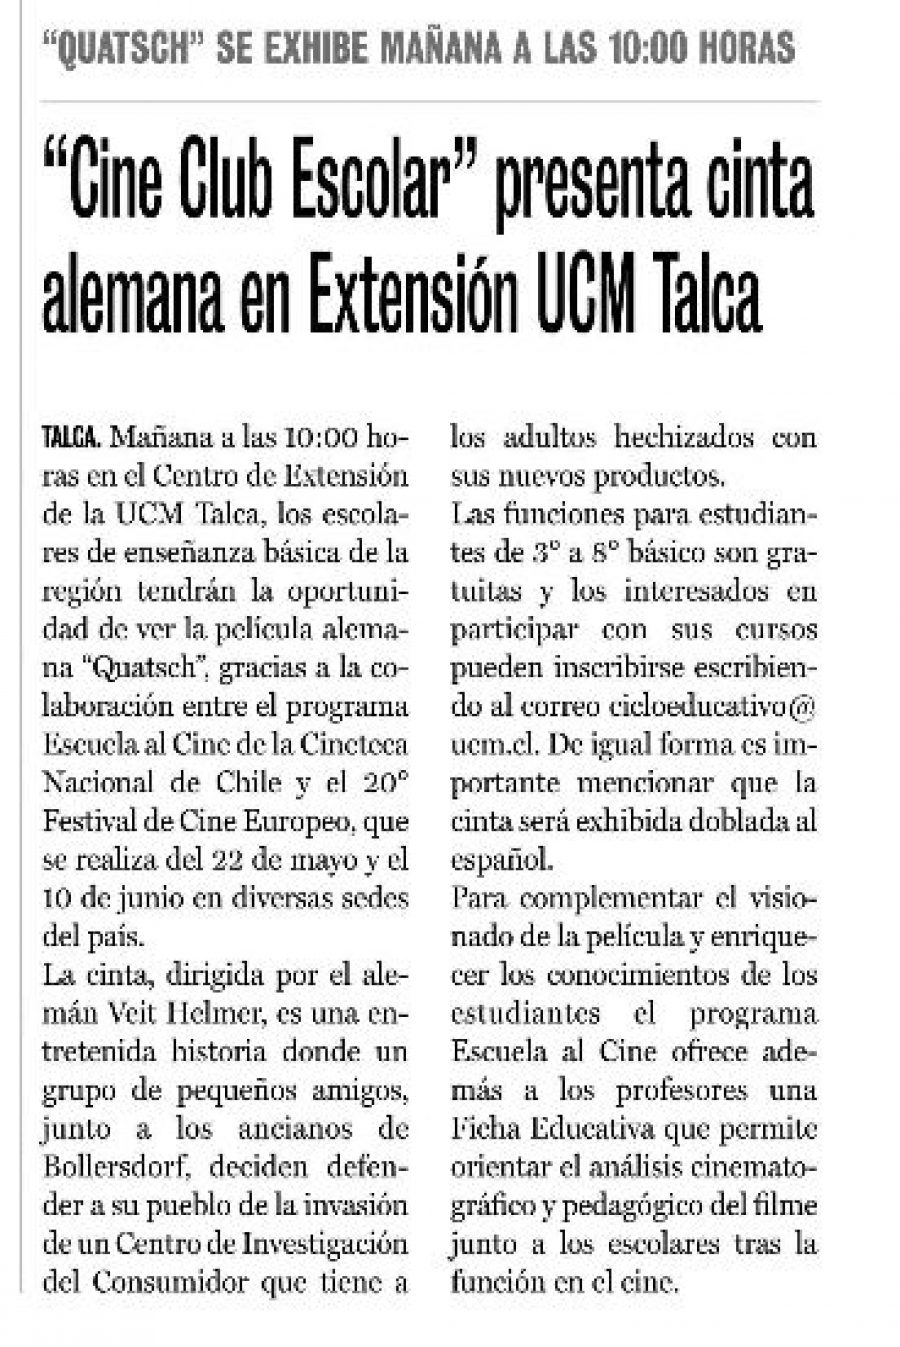 23 de mayo en Diario La Prensa: “Cine Cub Escolar presenta cinta alemana en Extensión UCM Talca”